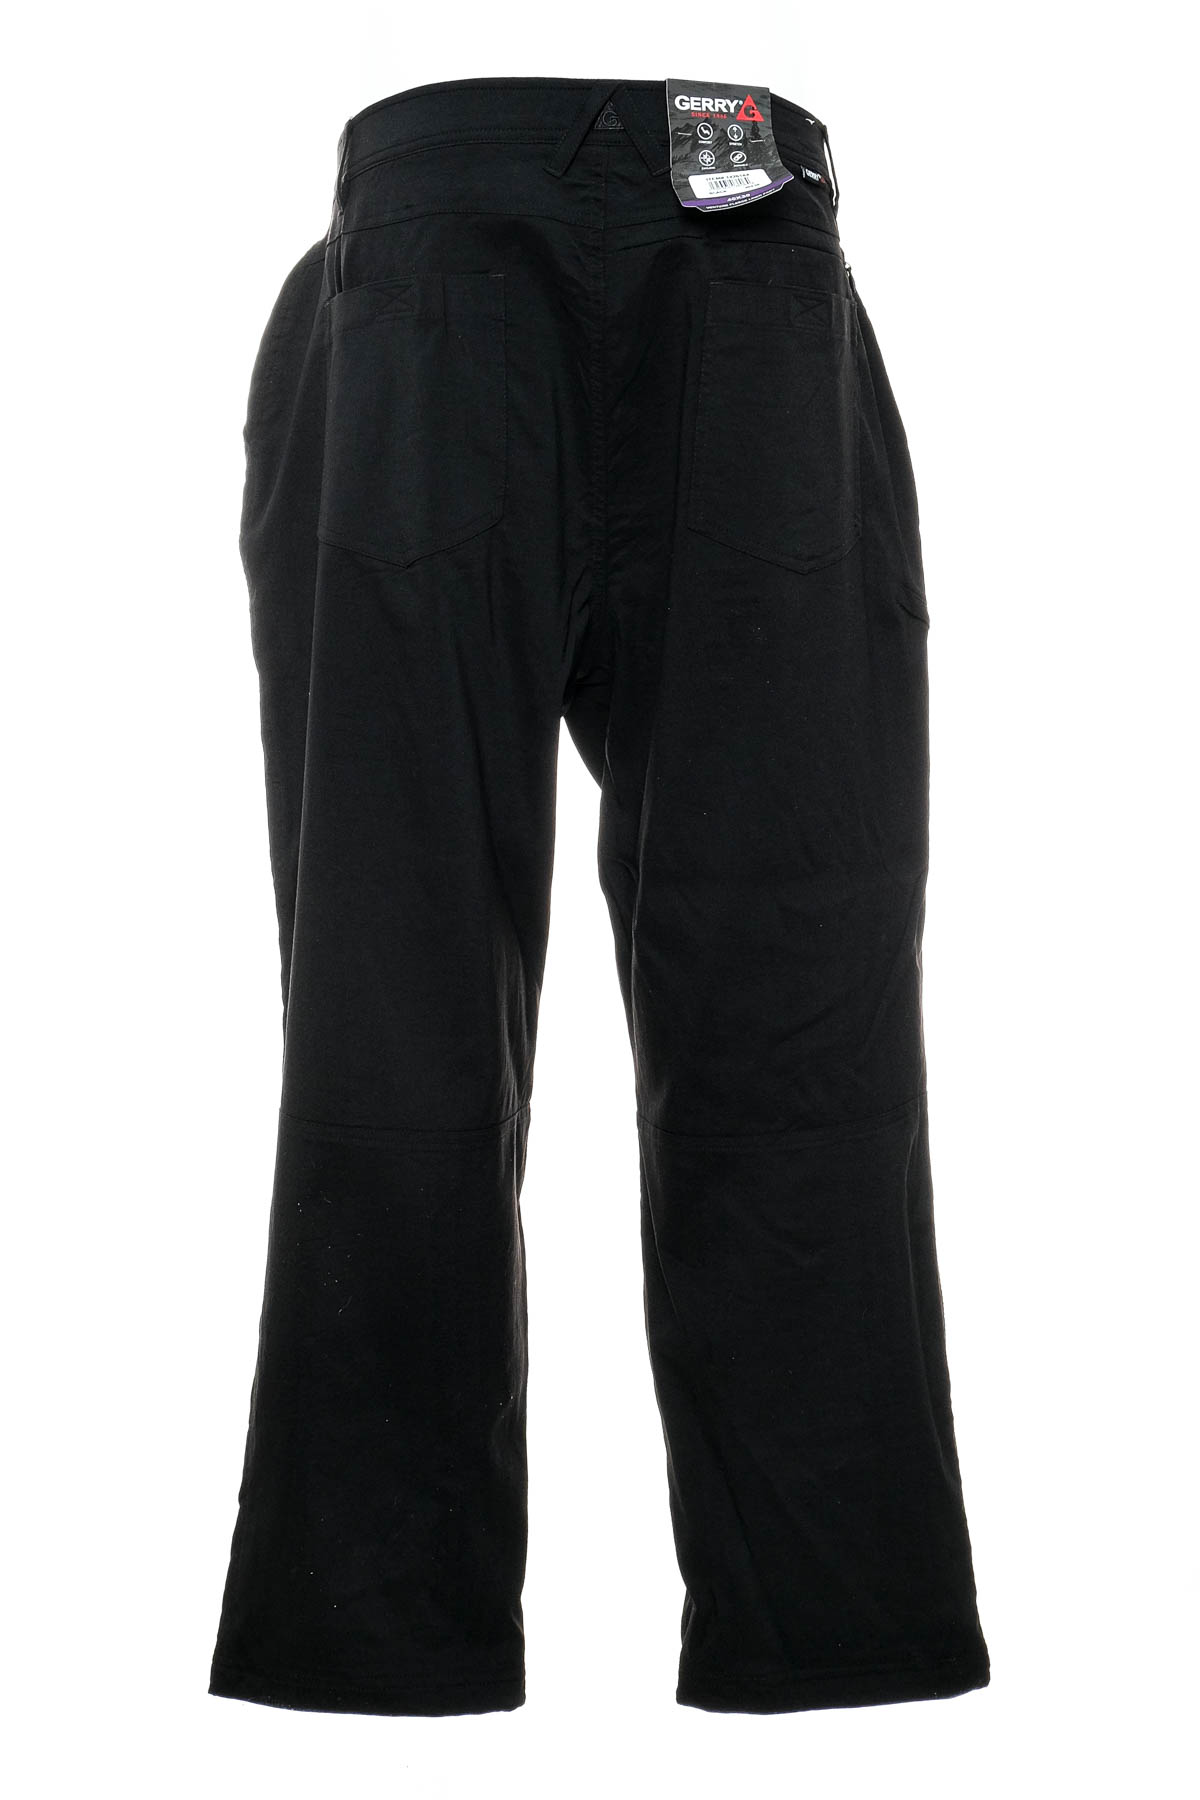 Pantalon pentru bărbați - GERRY - 1